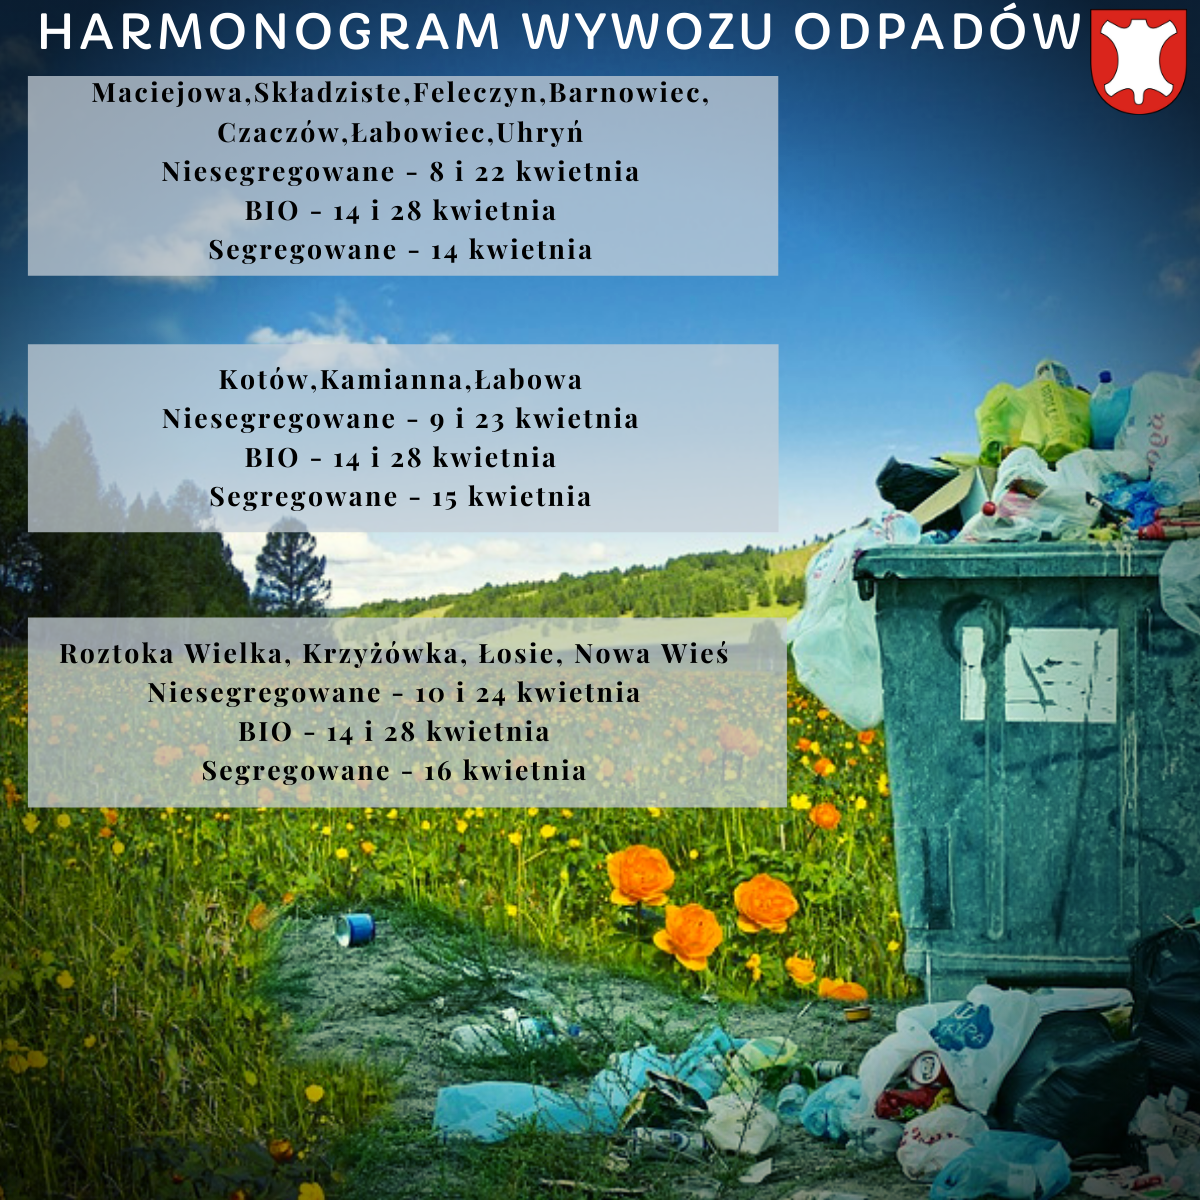 Harmonogram wywozu odpadów w kwietniu